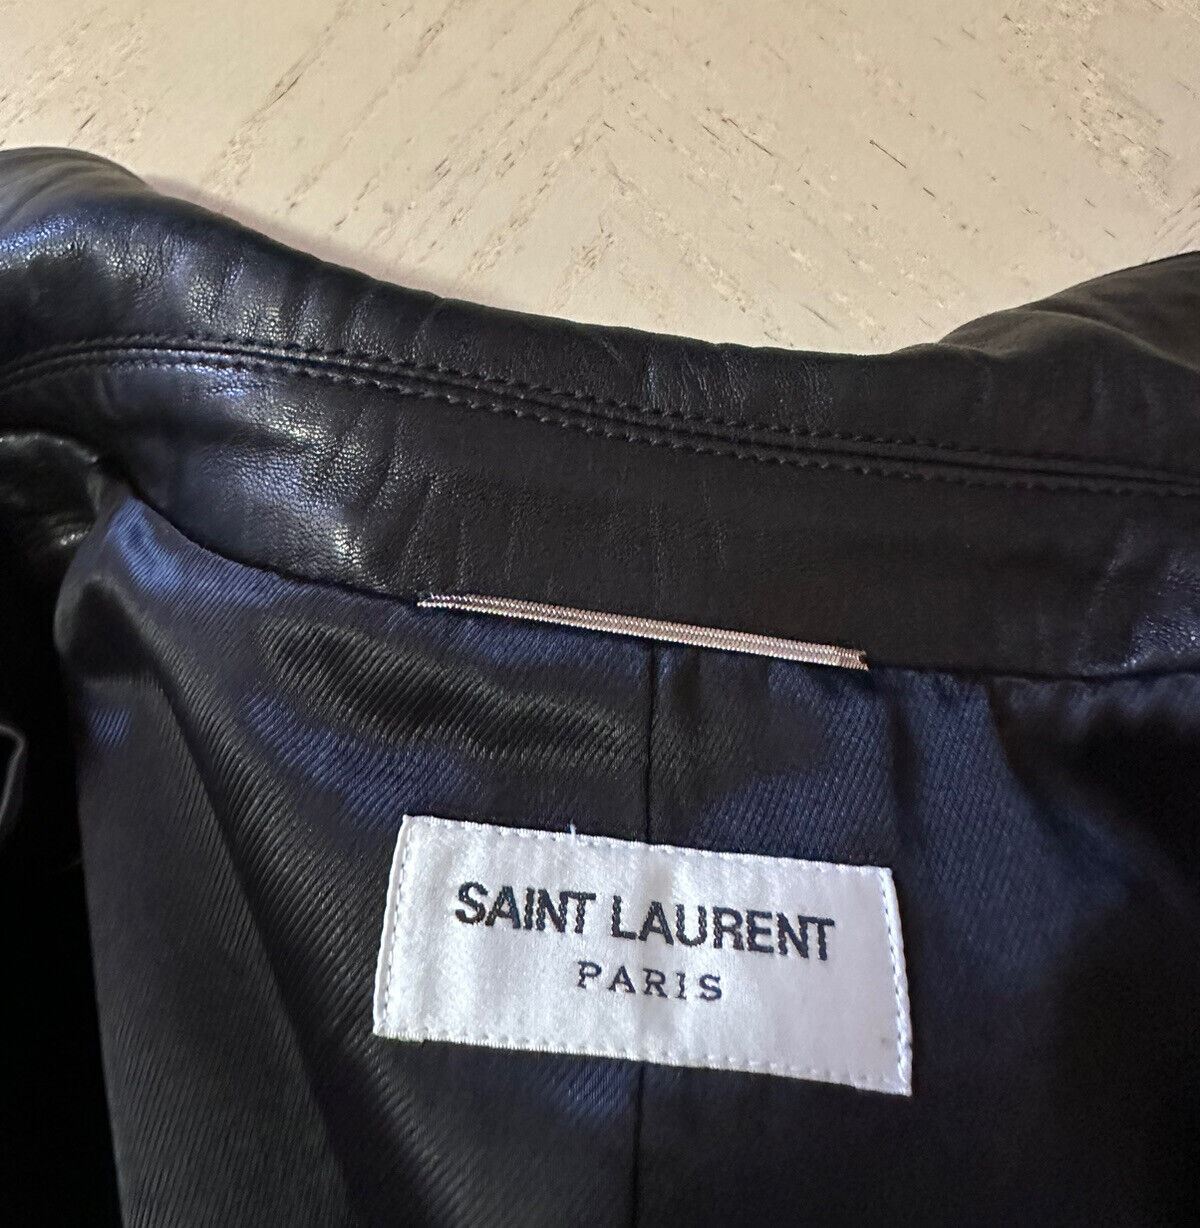 Neu $ 5490 Saint Laurent Herren Leder-/Wildlederjacke Mantel Schwarz 42 US/52 Eu Italien